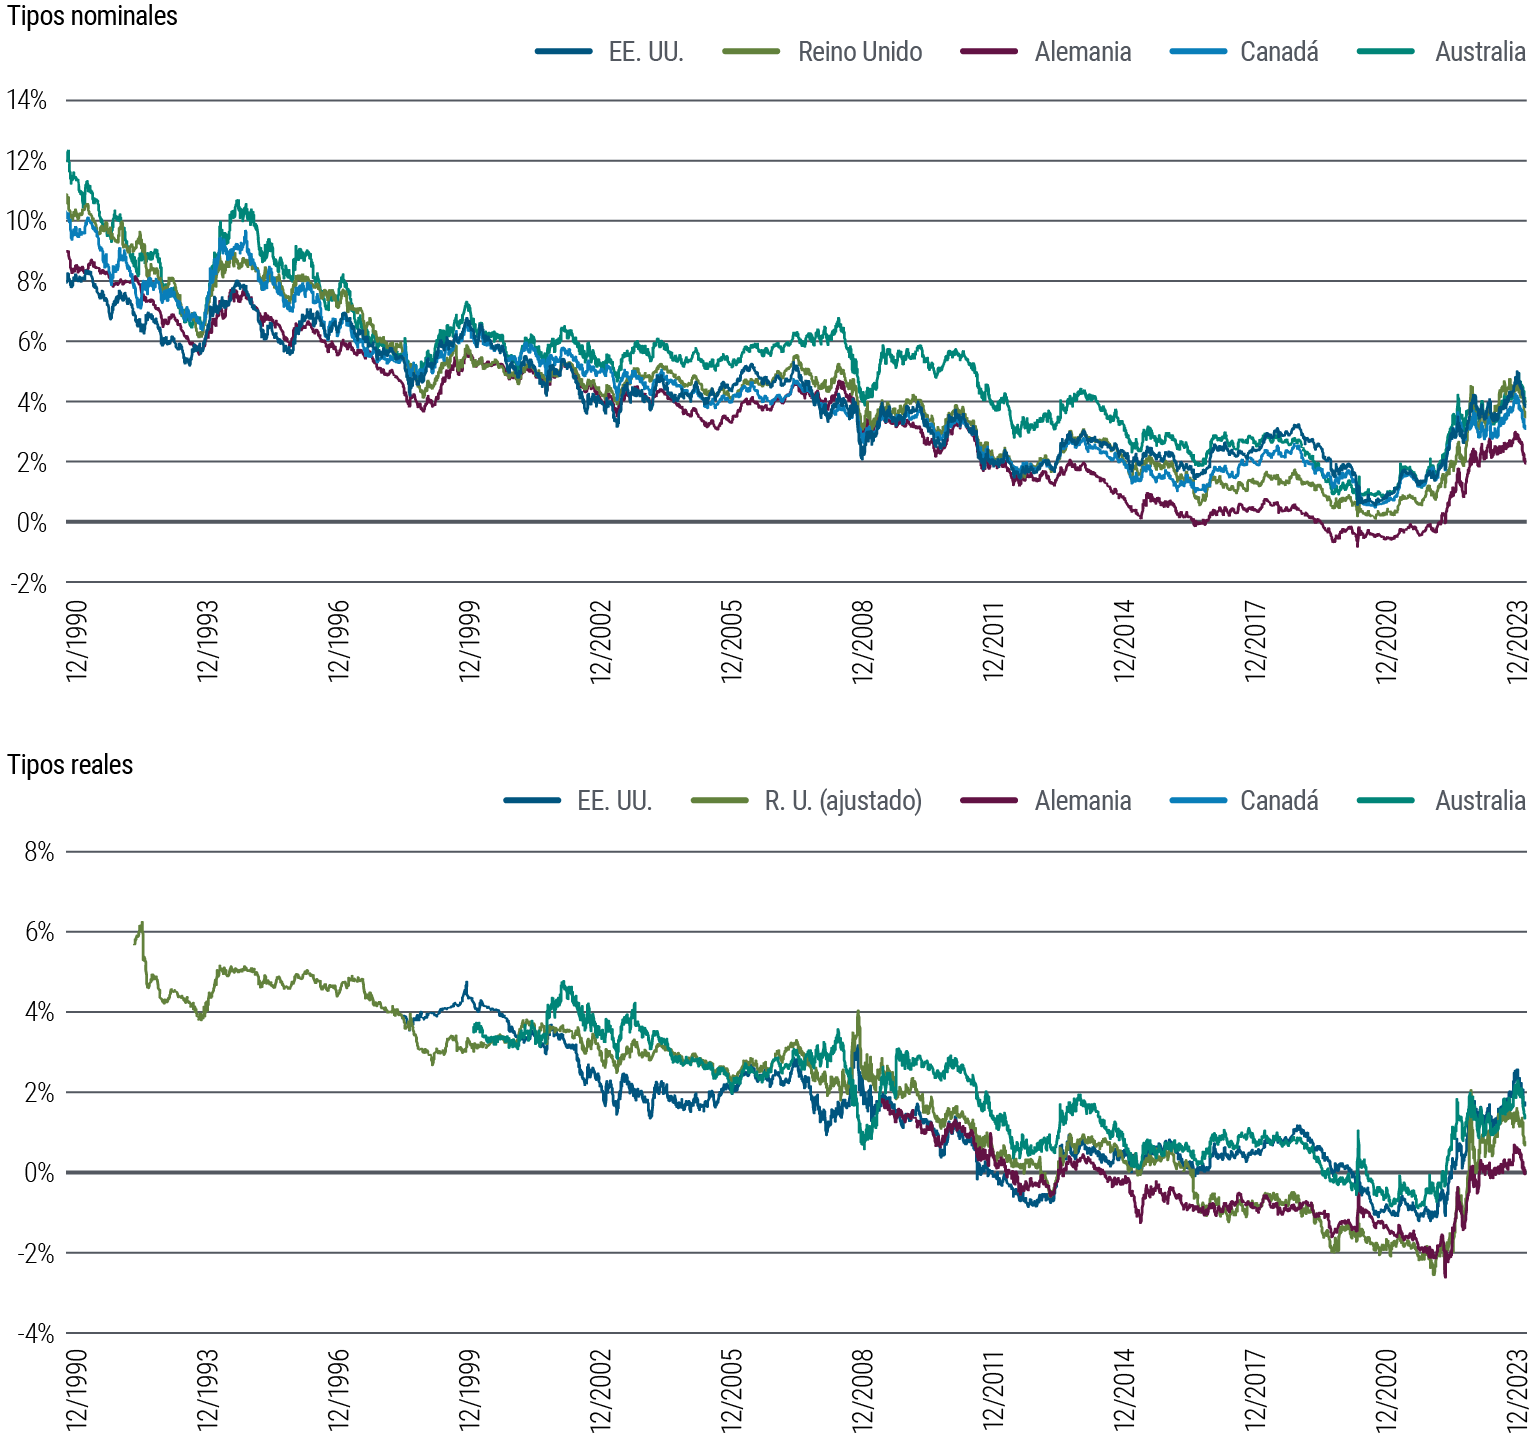 El gráfico 3 contiene dos gráficos de líneas. El primer gráfico muestra los tipos de interés nominales del bono a 10 años de cinco países de mercados desarrollados (Estados Unidos, Reino Unido, Alemania, Canadá y Australia) entre 1990 y diciembre de 2023. En ese periodo, los tipos nominales han fluctuado un poco, pero en general han mostrado una tendencia bajista desde el 9%–14% en 1990 hasta un mínimo cercano al 0% en 2020, en torno a la pandemia. Desde entonces, han vuelto a subir hasta un rango de entre un 2% hasta algo menos del 4%. El segundo gráfico muestra los tipos de interés reales del bono a 10 años de los mismos países en el mismo periodo. En general, los tipos reales cayeron de forma gradual durante gran parte del periodo analizado, luego aumentaron bruscamente tras la pandemia y han frenado el ritmo más recientemente, aunque aún siguen por encima de sus mínimos, en un rango de entre el 0,1% y el 1,7%. Los datos proceden de PIMCO y Bloomberg, a 29 de diciembre de 2023.